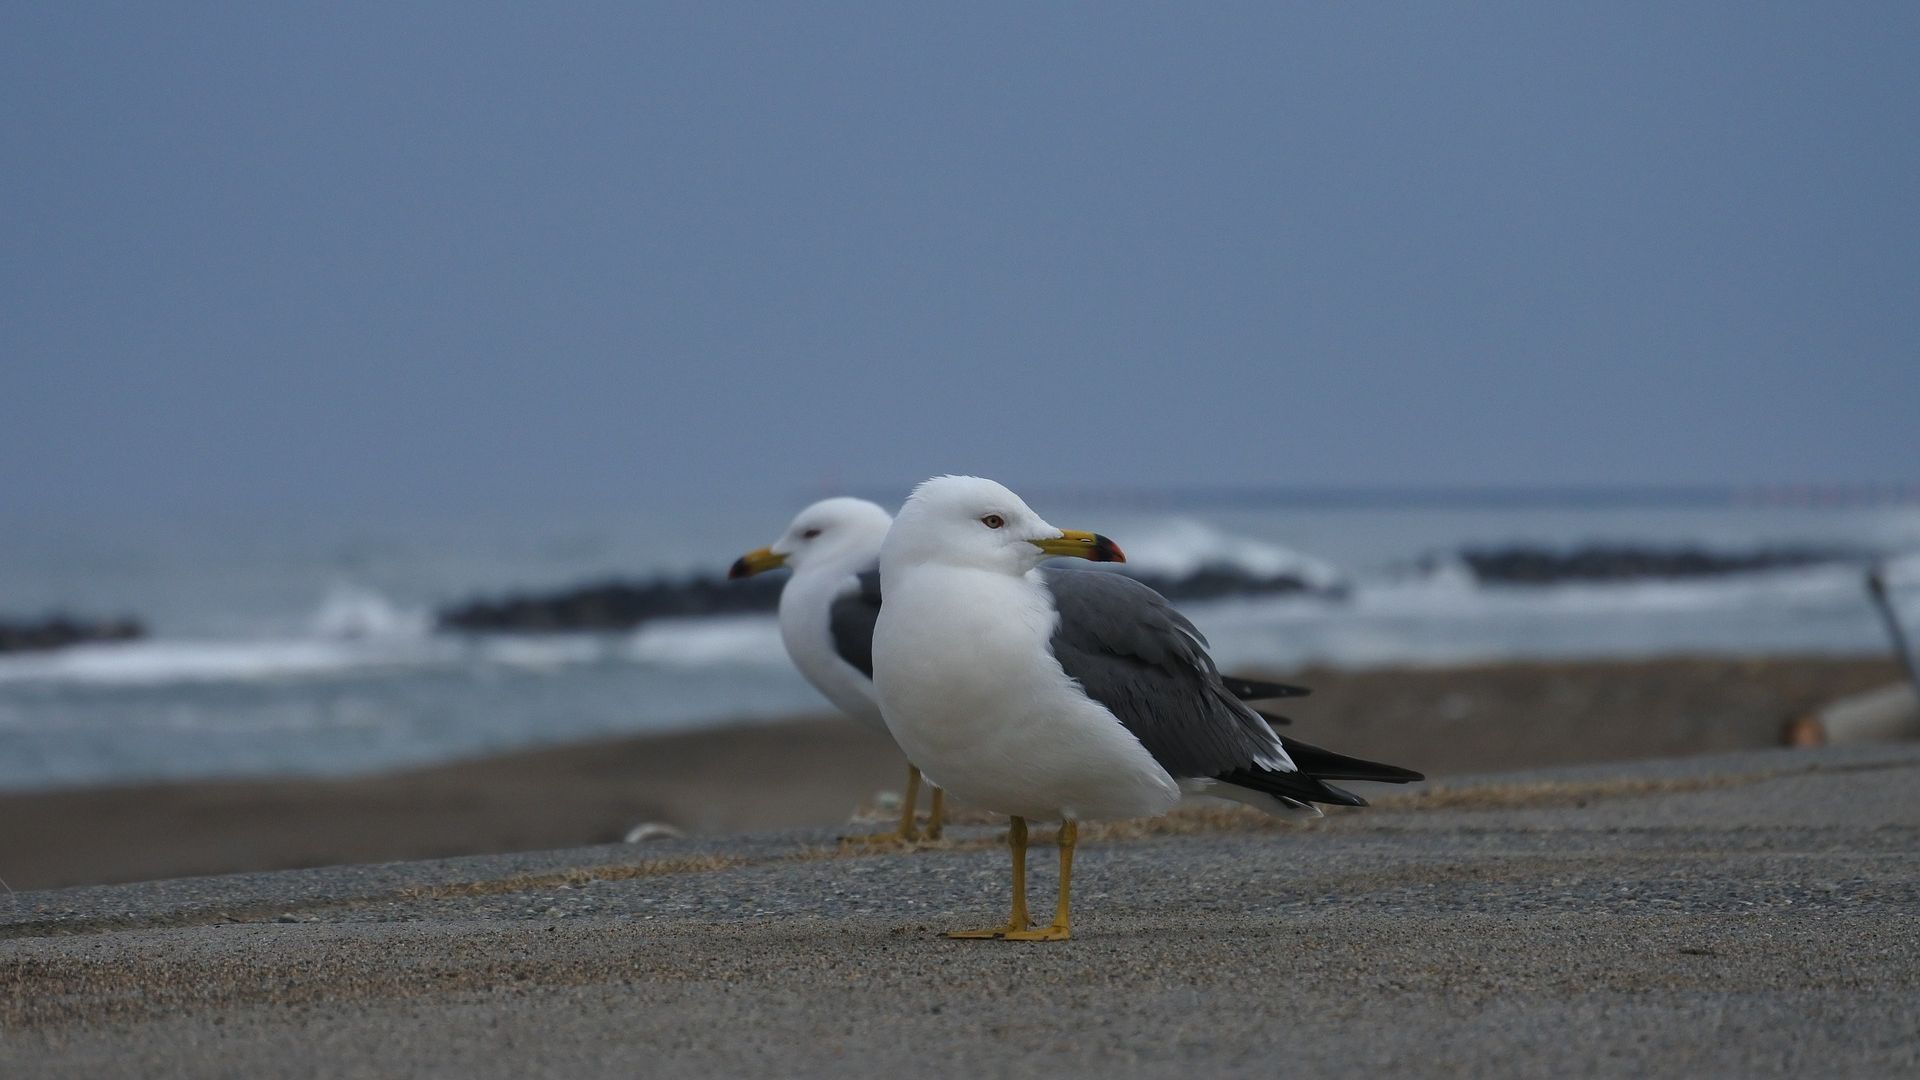 Wallpaper Seagulls bird at beach